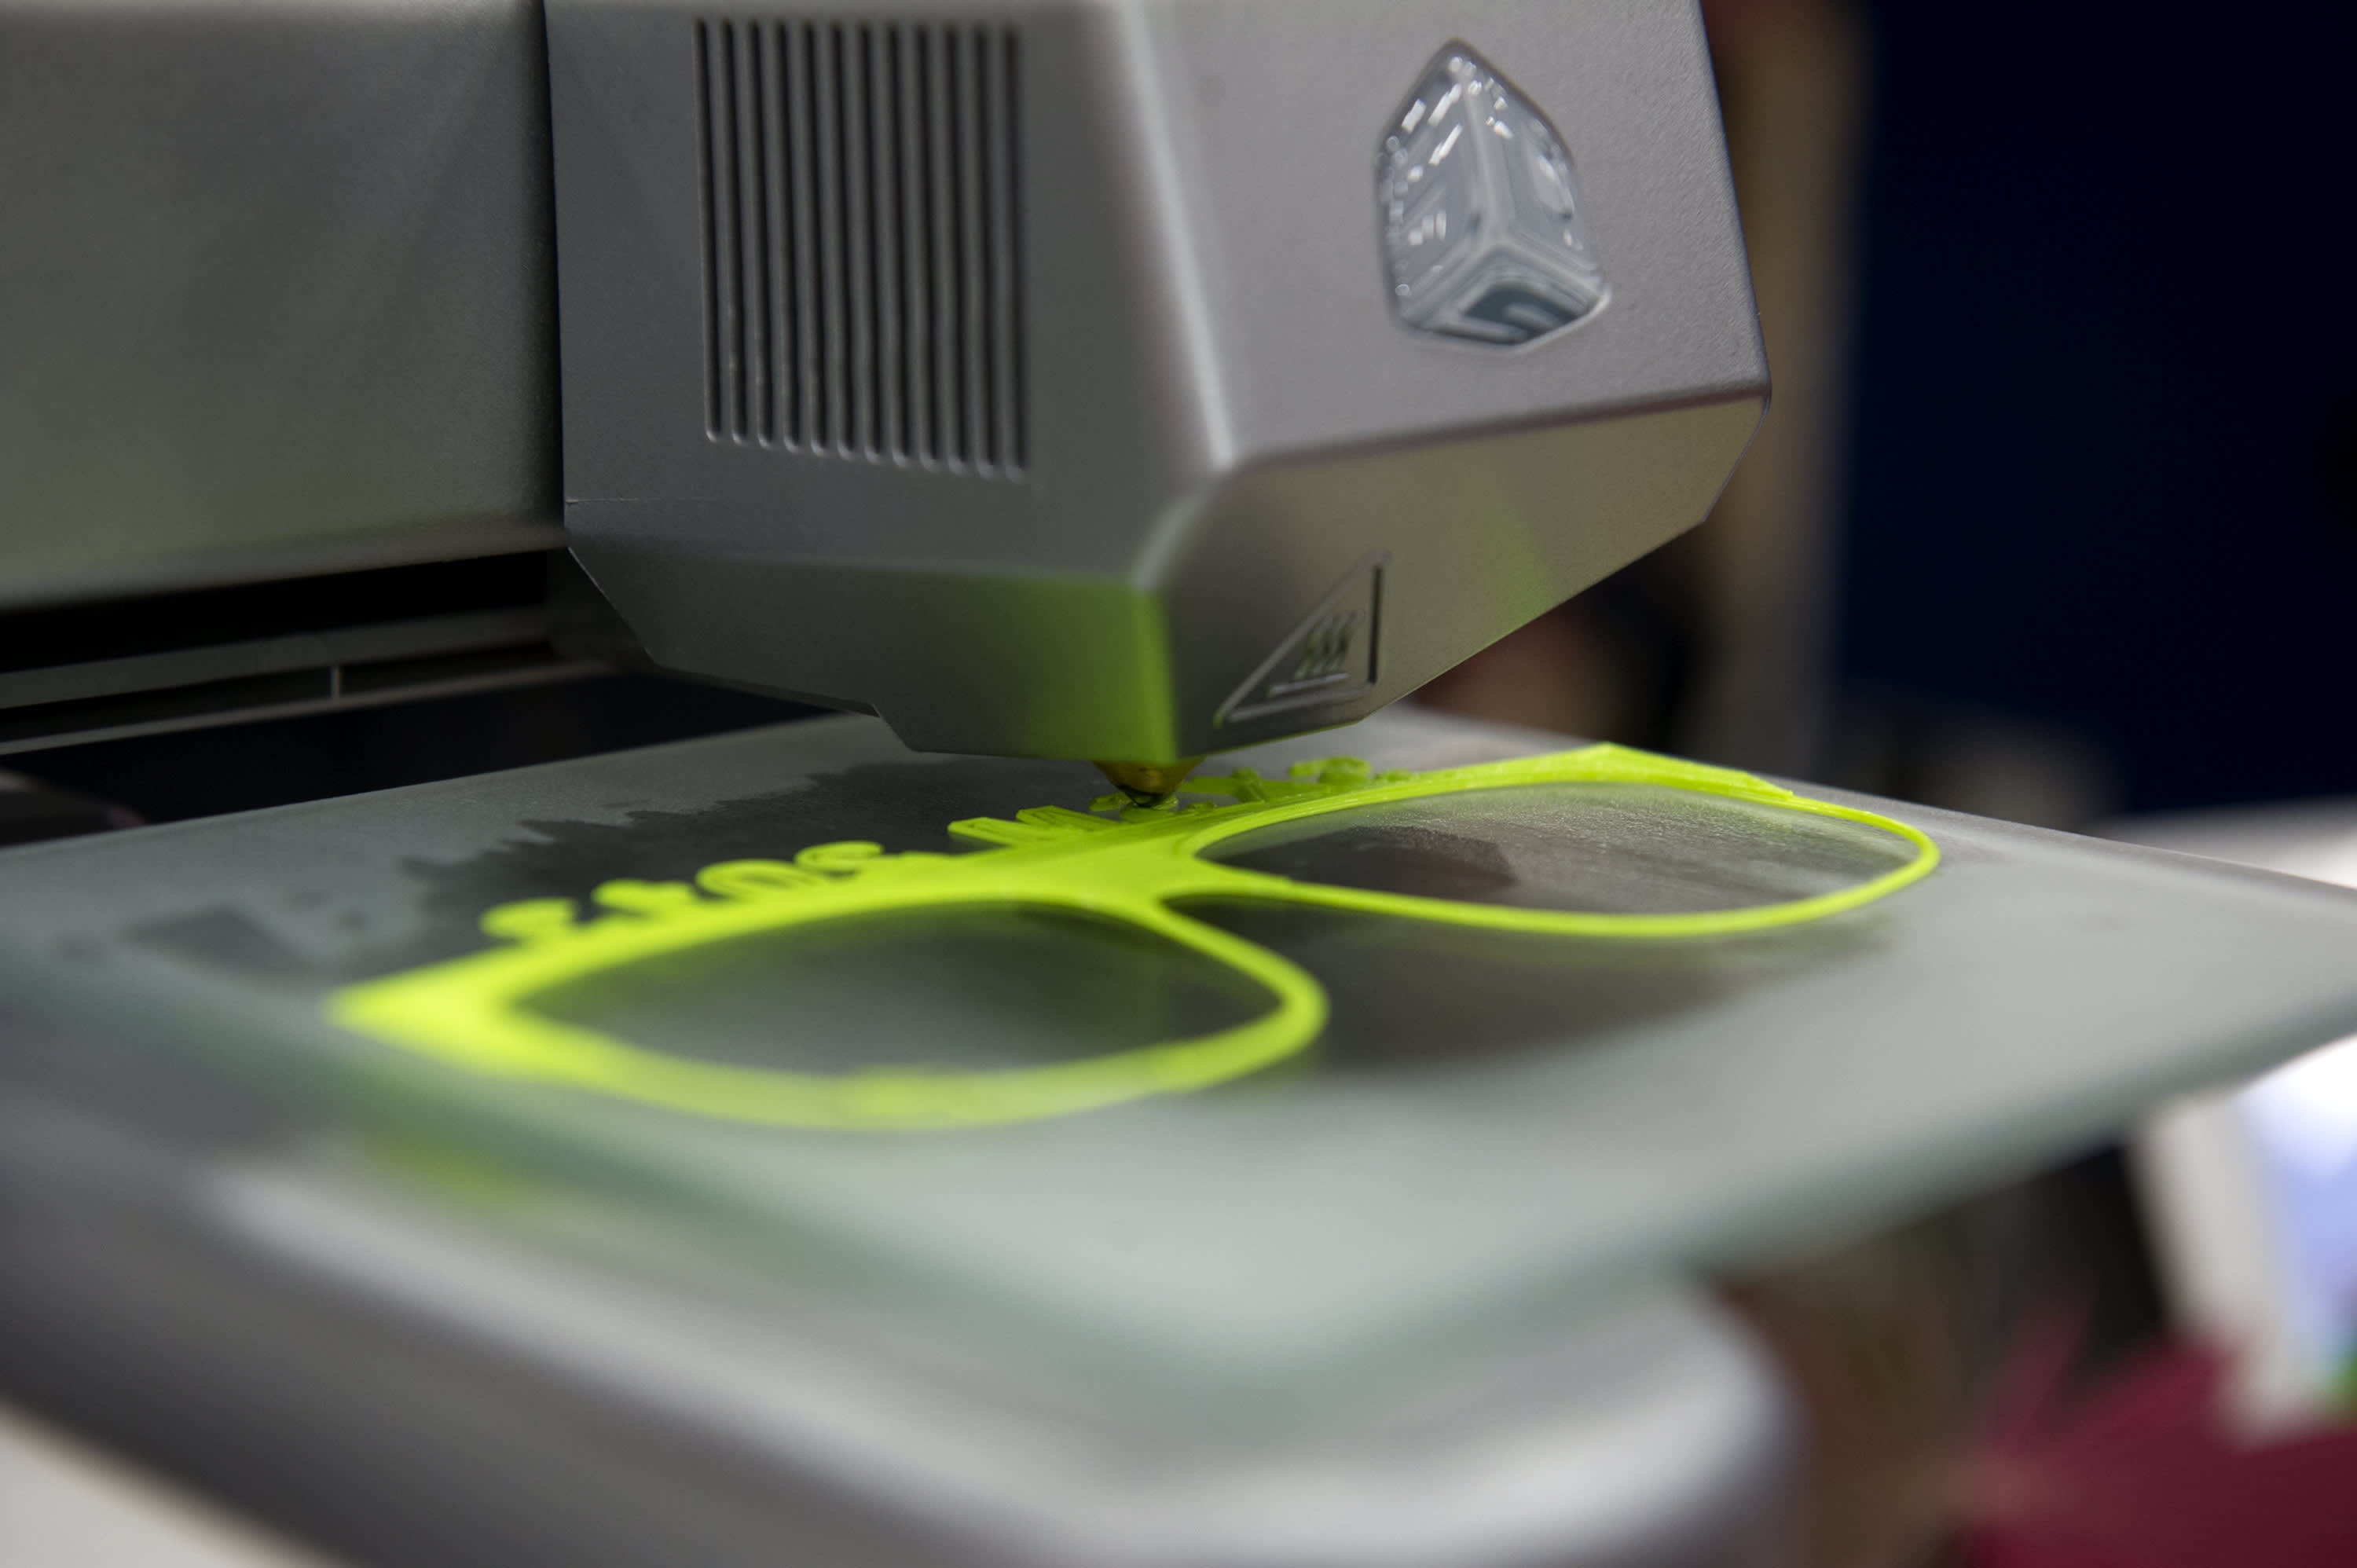 Печать прототипов. 3д принтер DX 3. Печать очков на 3d принтере. 3д печать оправы. Внедрение 3д печати.